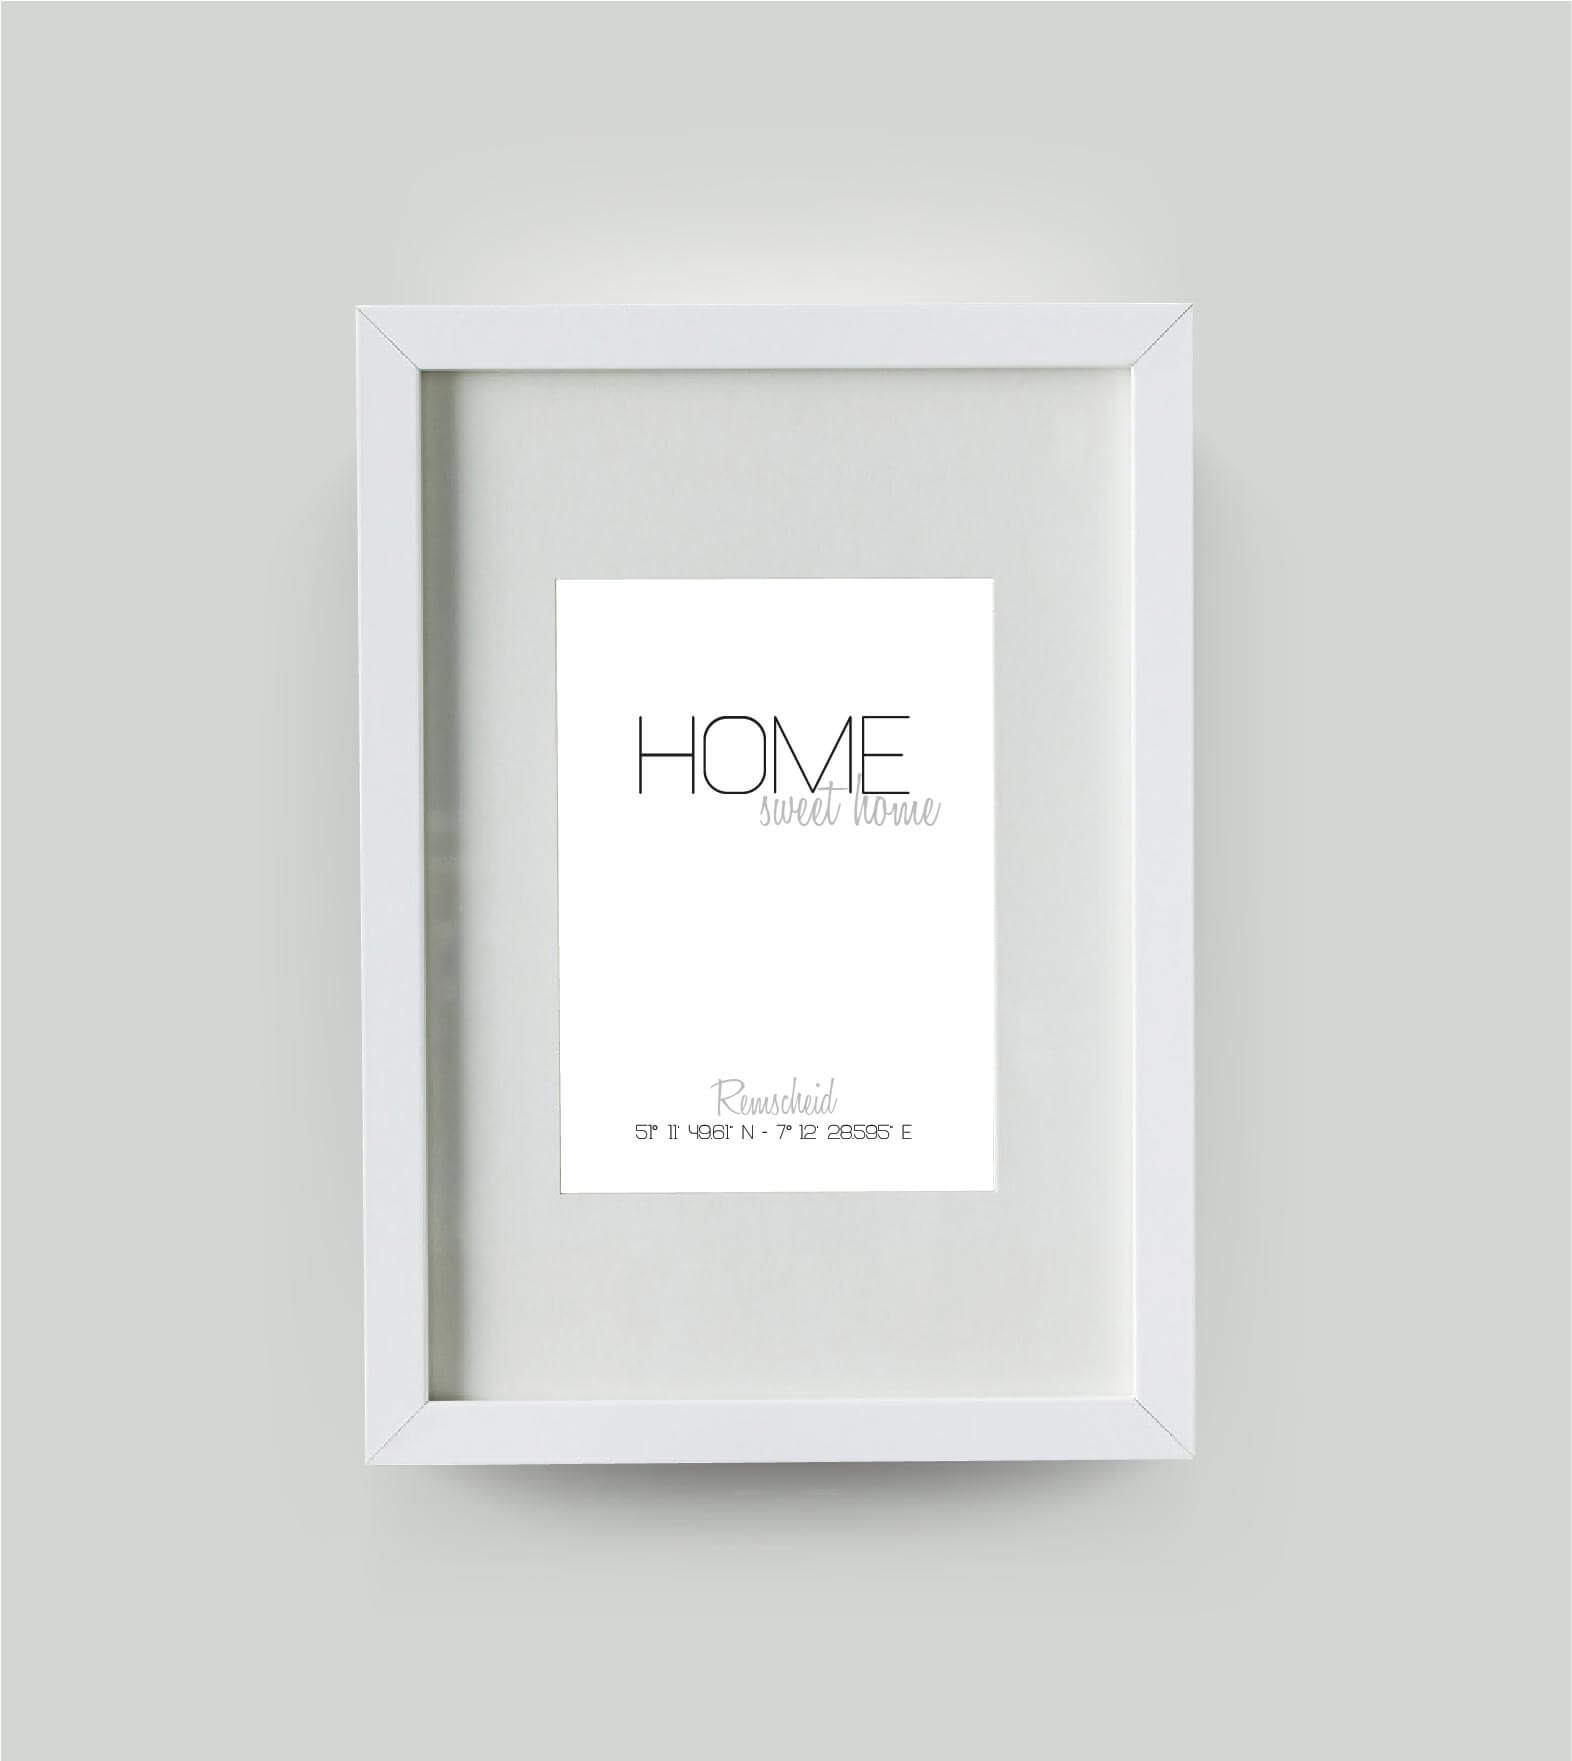 Personalisiertes Koordinatenbild “HOME sweet home”, Bildfarbe: Weiß, Bildgröße: DIN A4, Bilderrahmen: Bilderrahmen weiß mit Passepartout, Copyright: 321geschenke.de